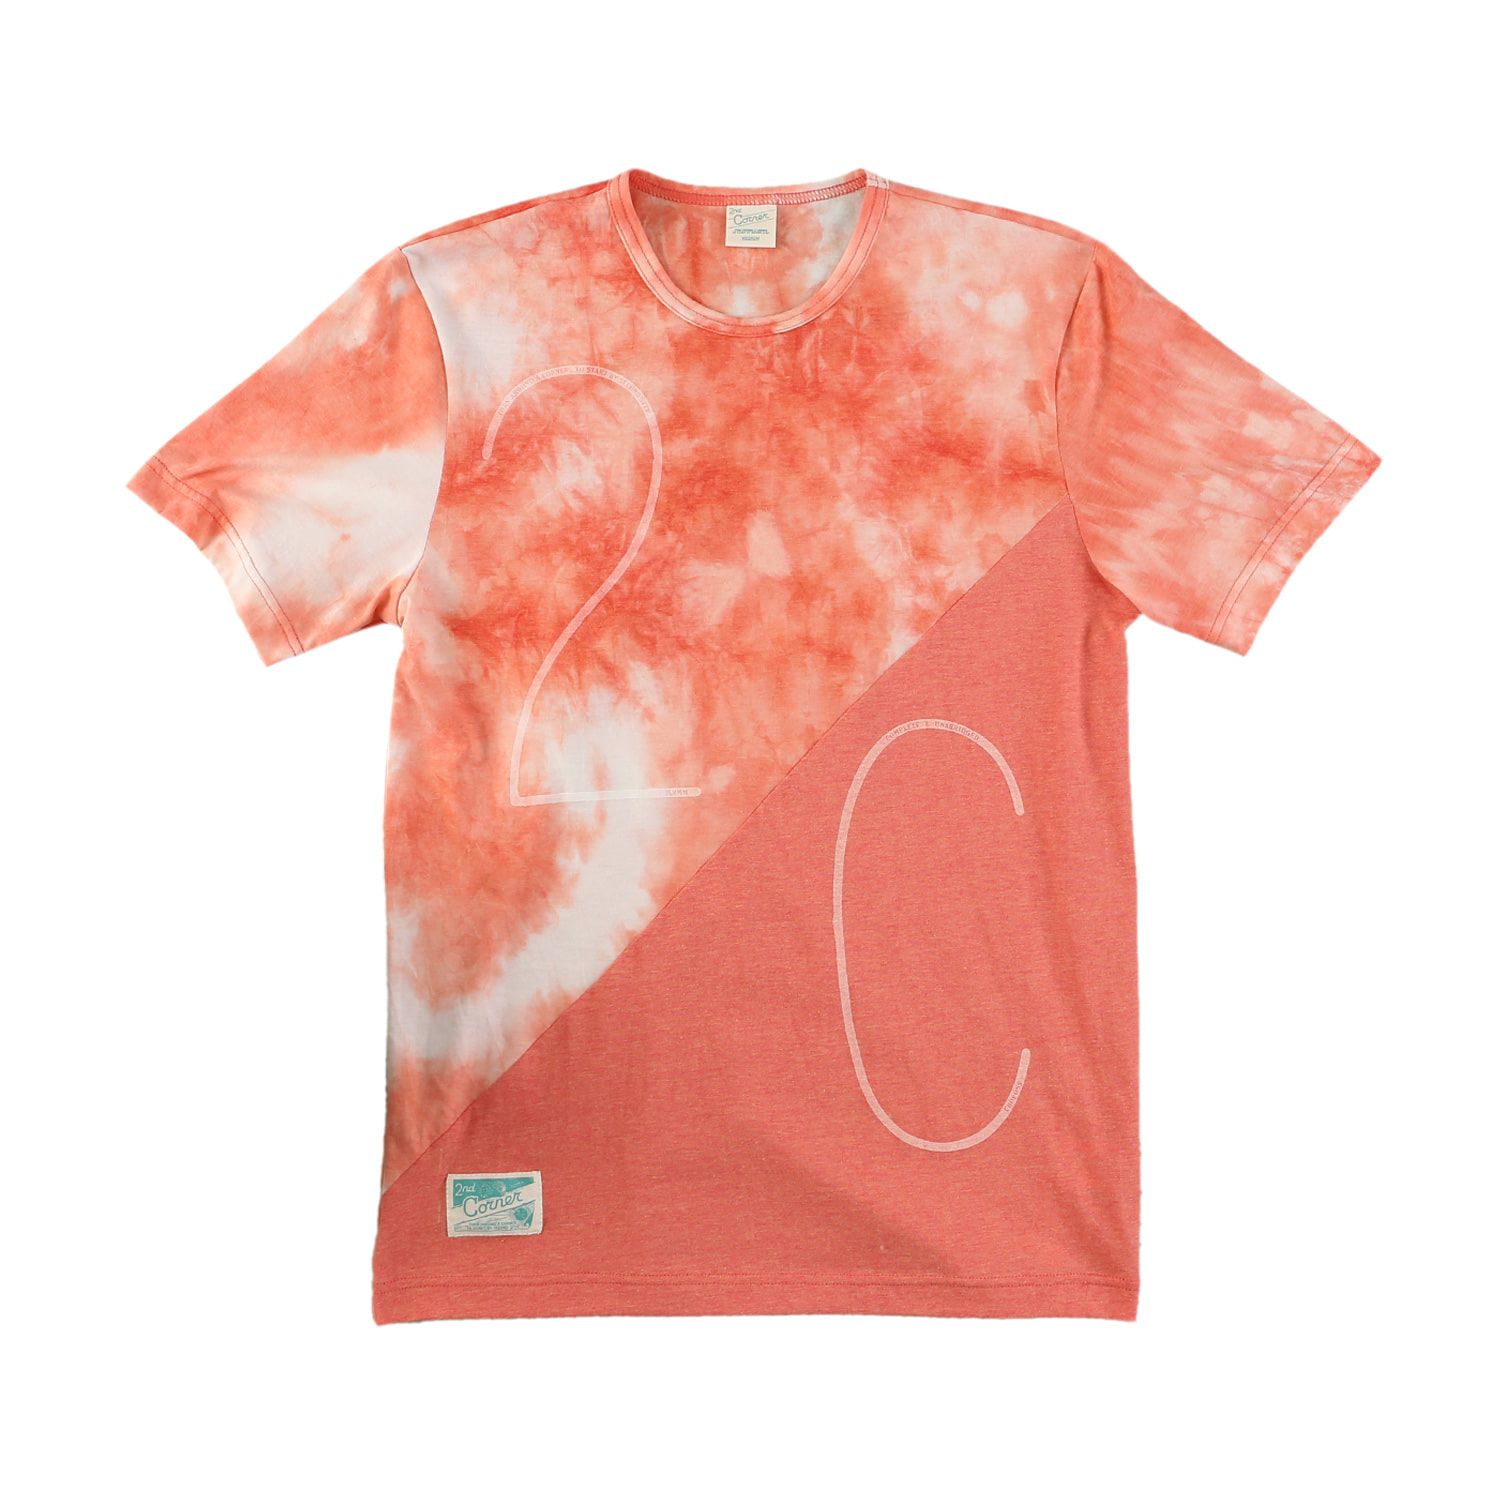 세컨드코너 2C 남성 반팔 티셔츠 / 그래픽 티셔츠 / 라운드넥 반팔티 / 물나염 티셔츠 Stieg - Tye Dye Orange